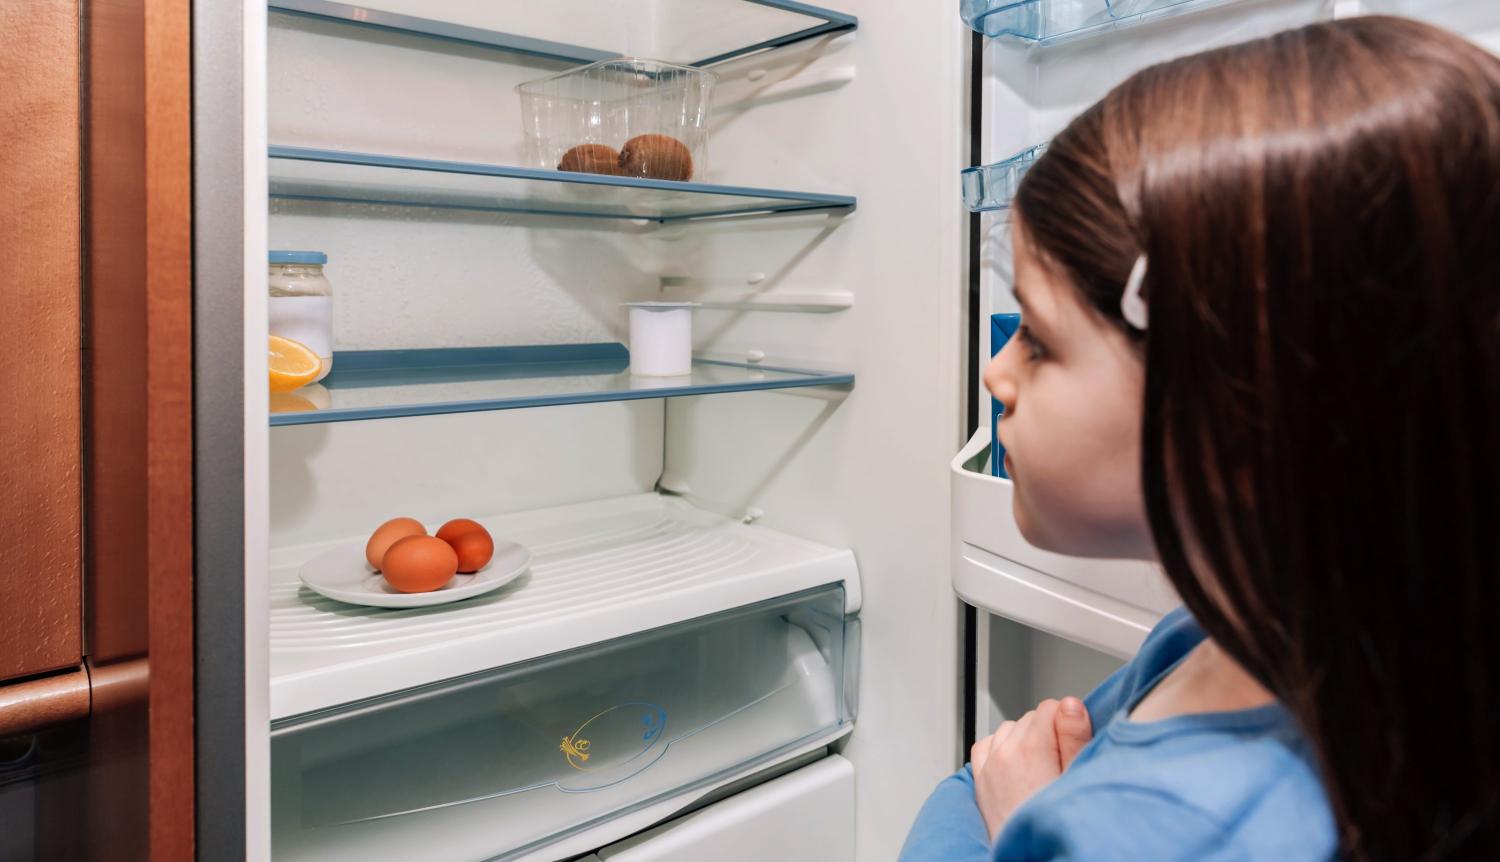 Girl looks into almost empty fridge